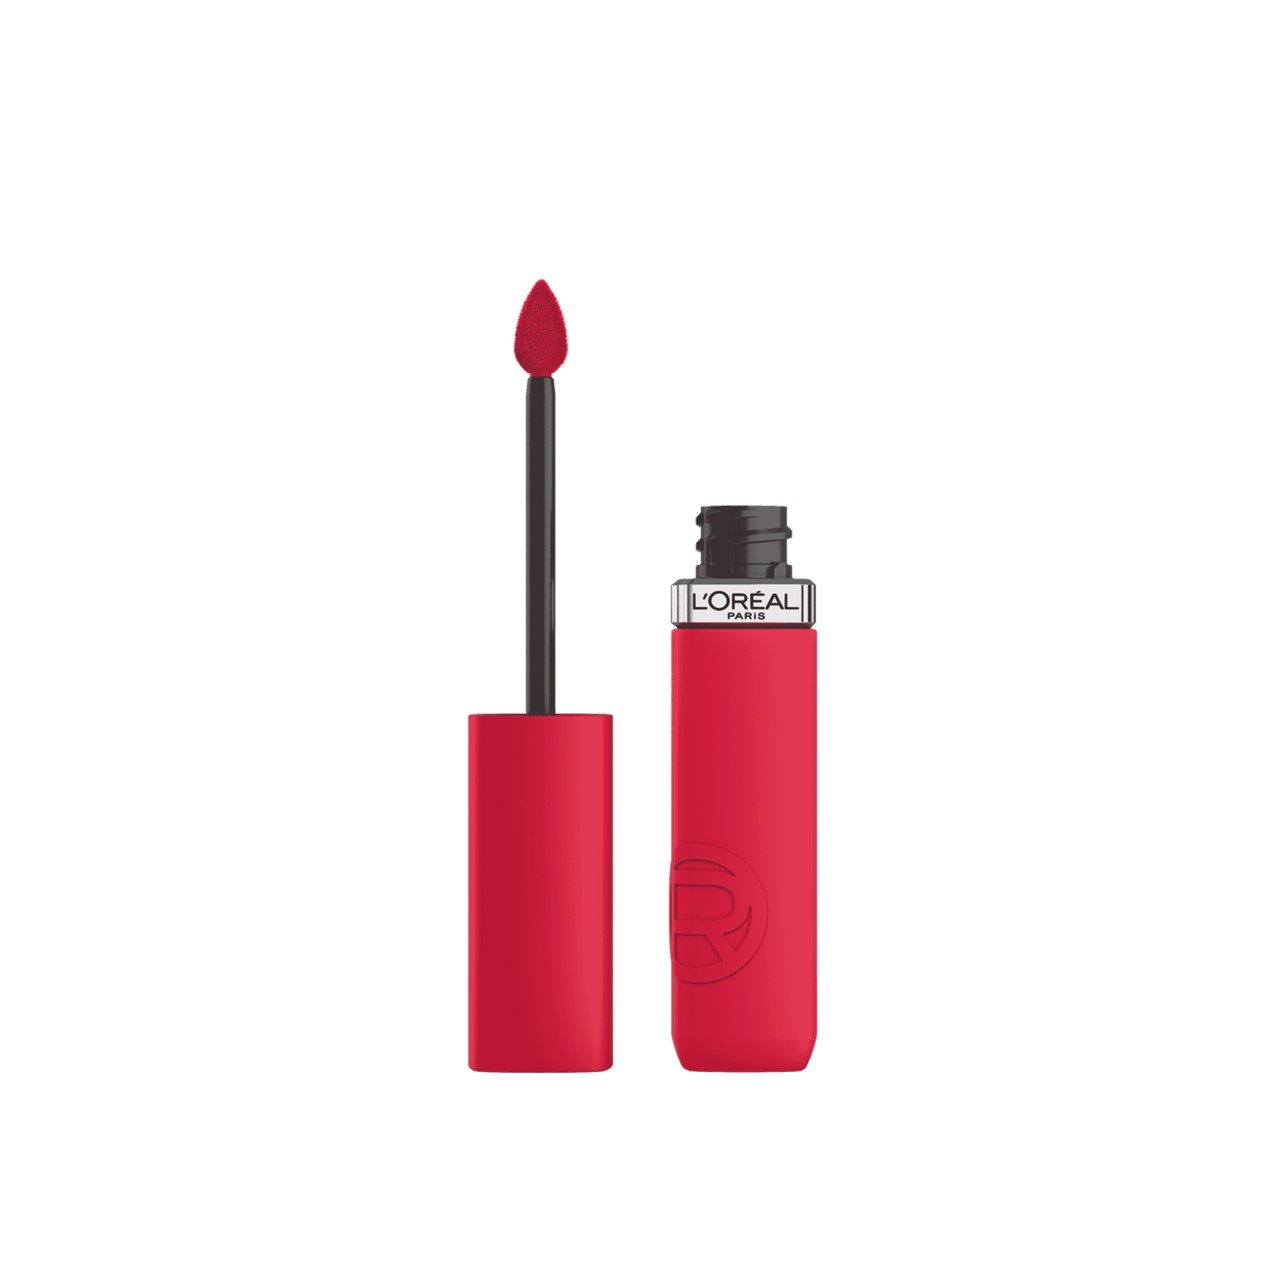 L'Oréal Paris Infallible Matte Resistance Liquid Lipstick 245 French Kiss 5ml